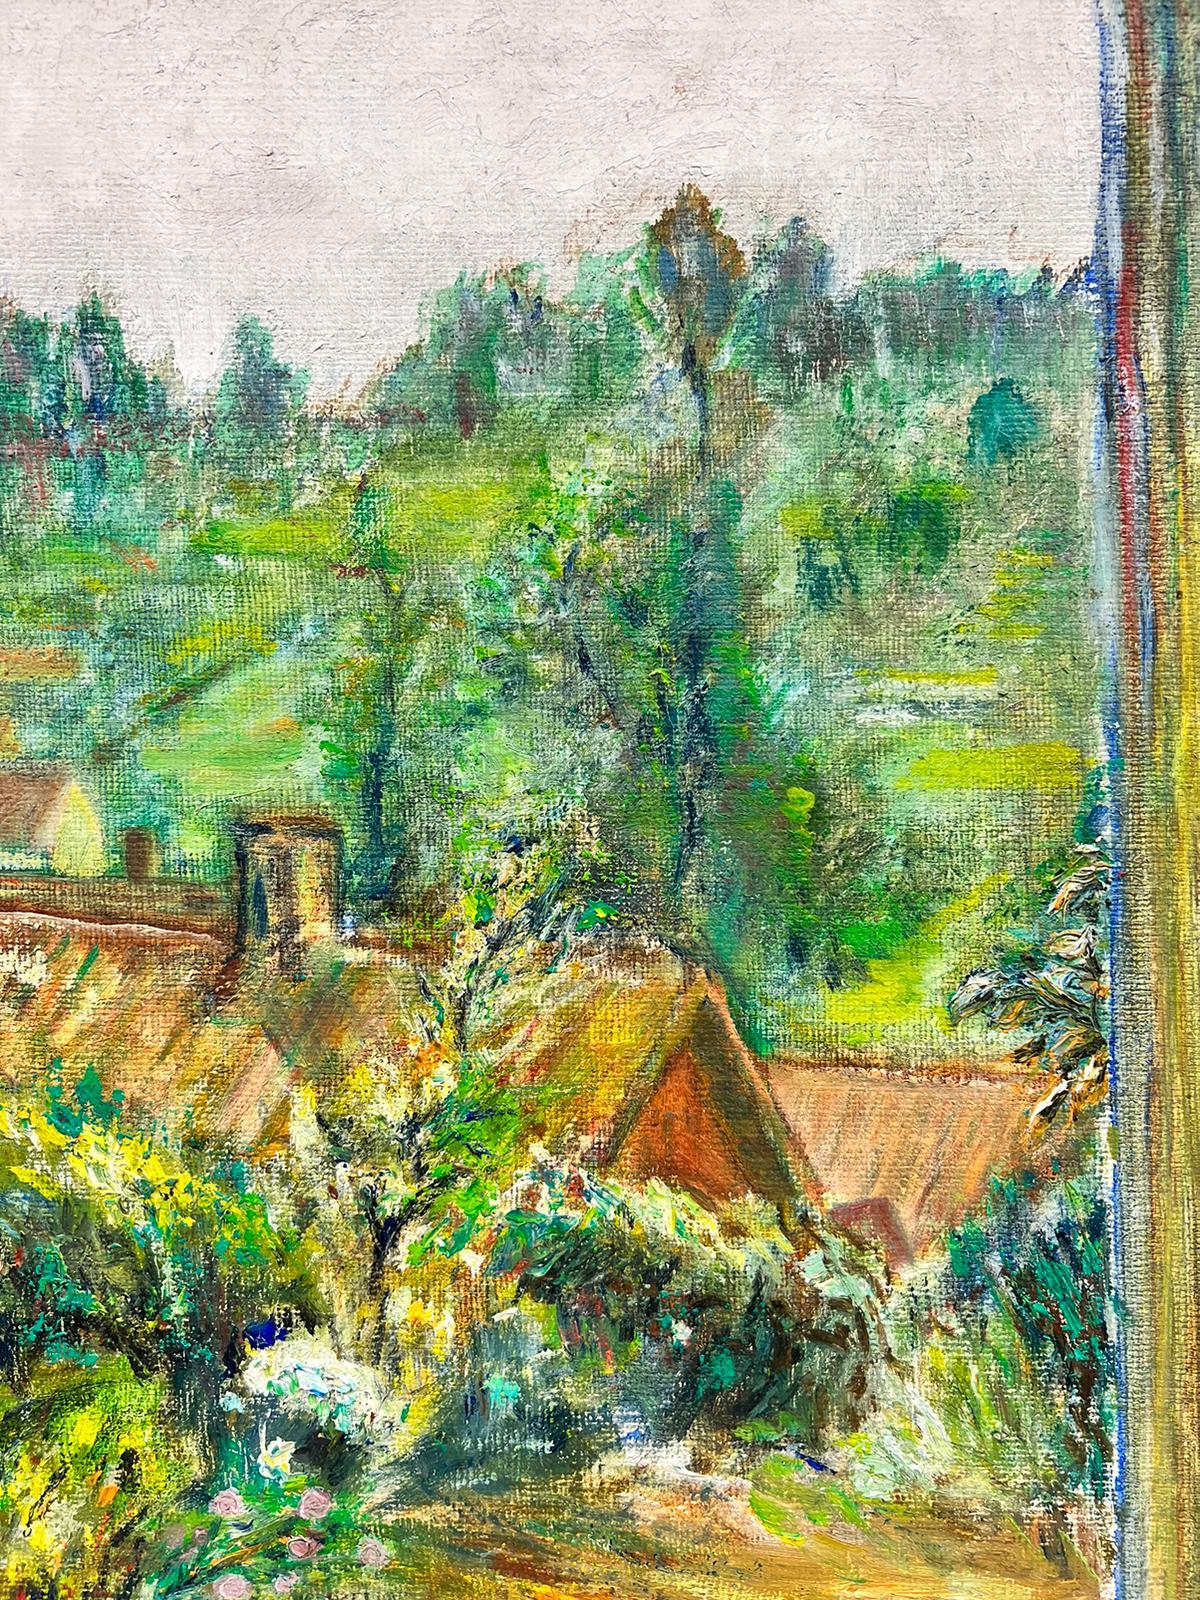 Tableau impressionniste français rêveur d'une fenêtre sur un paysage de jardin vert - Impressionnisme Painting par 1900's French Impressionist